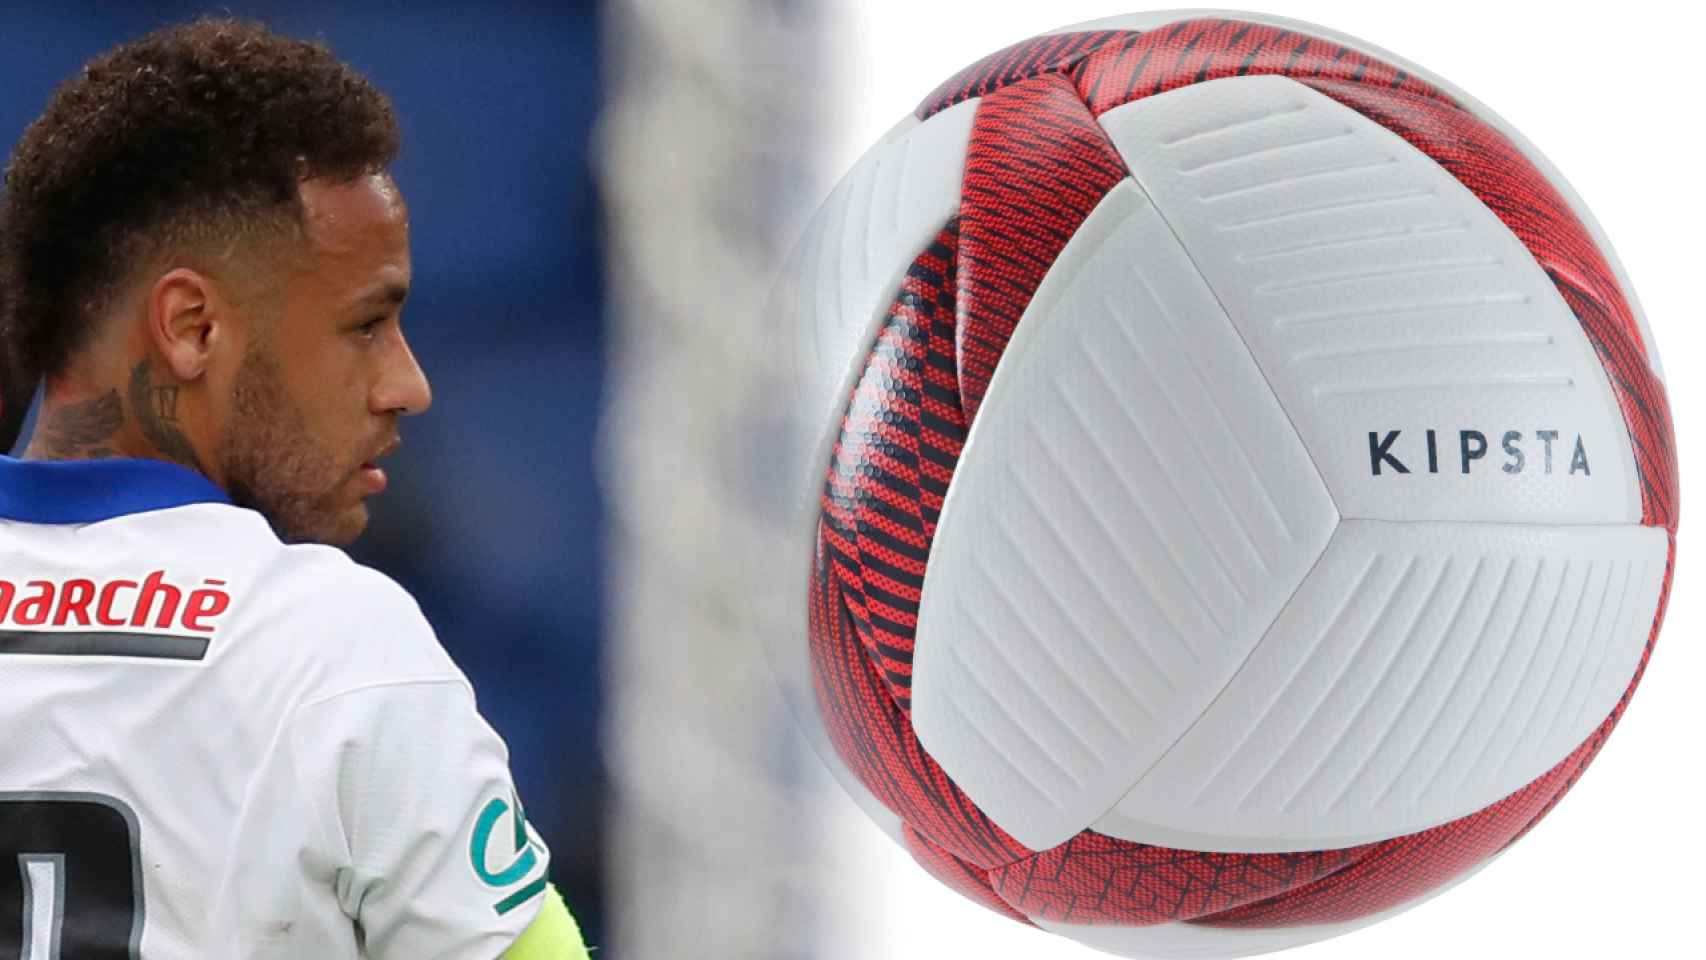 Neymar Jr. y un balón Kipsta, en un fotomontaje